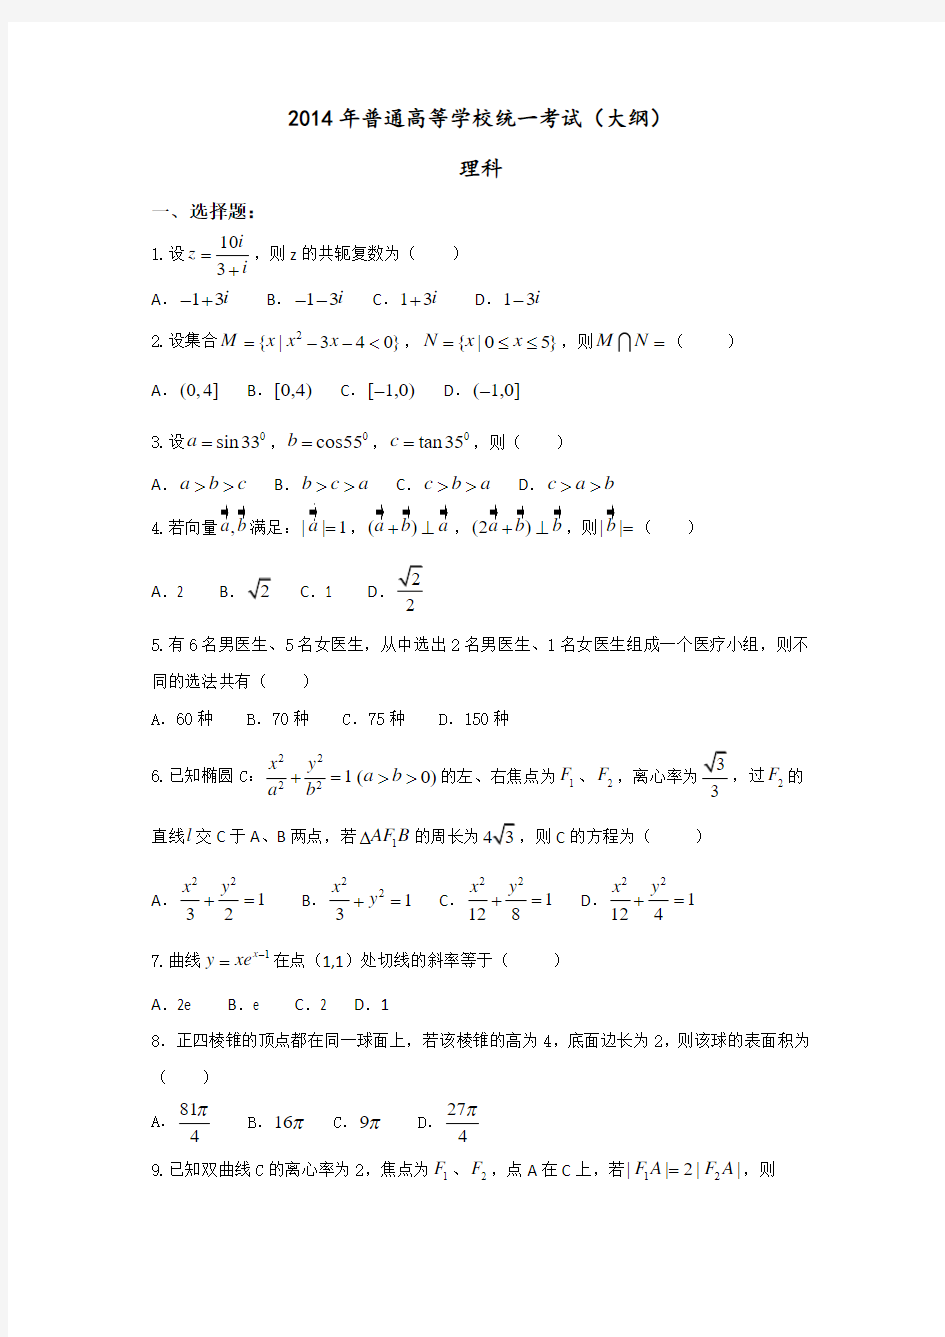 2014年高考真题—理科数学(全国大纲卷)